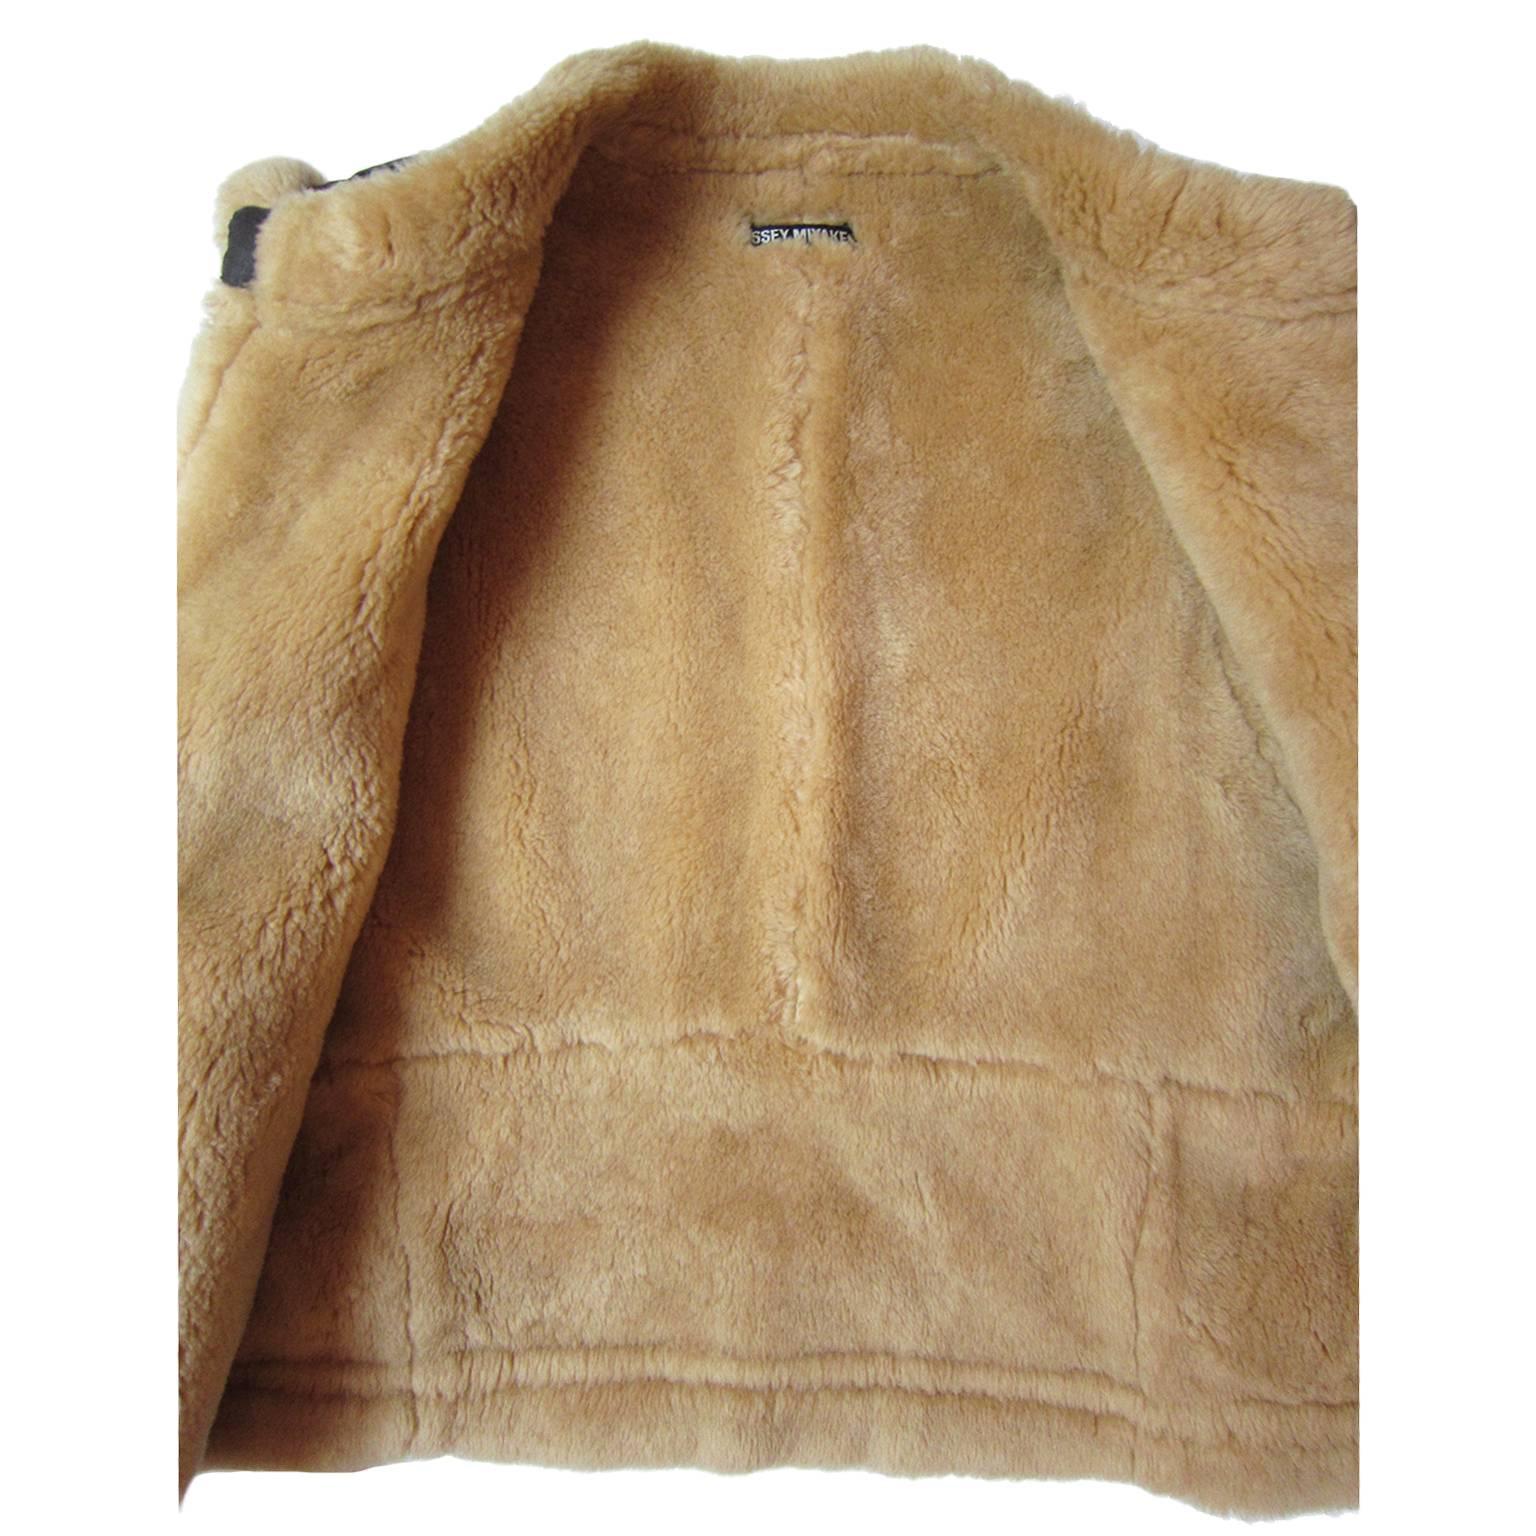 Issey Miyake wool vest in brown tone. 
Measurements :
Shoulder : 44 cm
Underarm : 56 cm
Length 70 cm